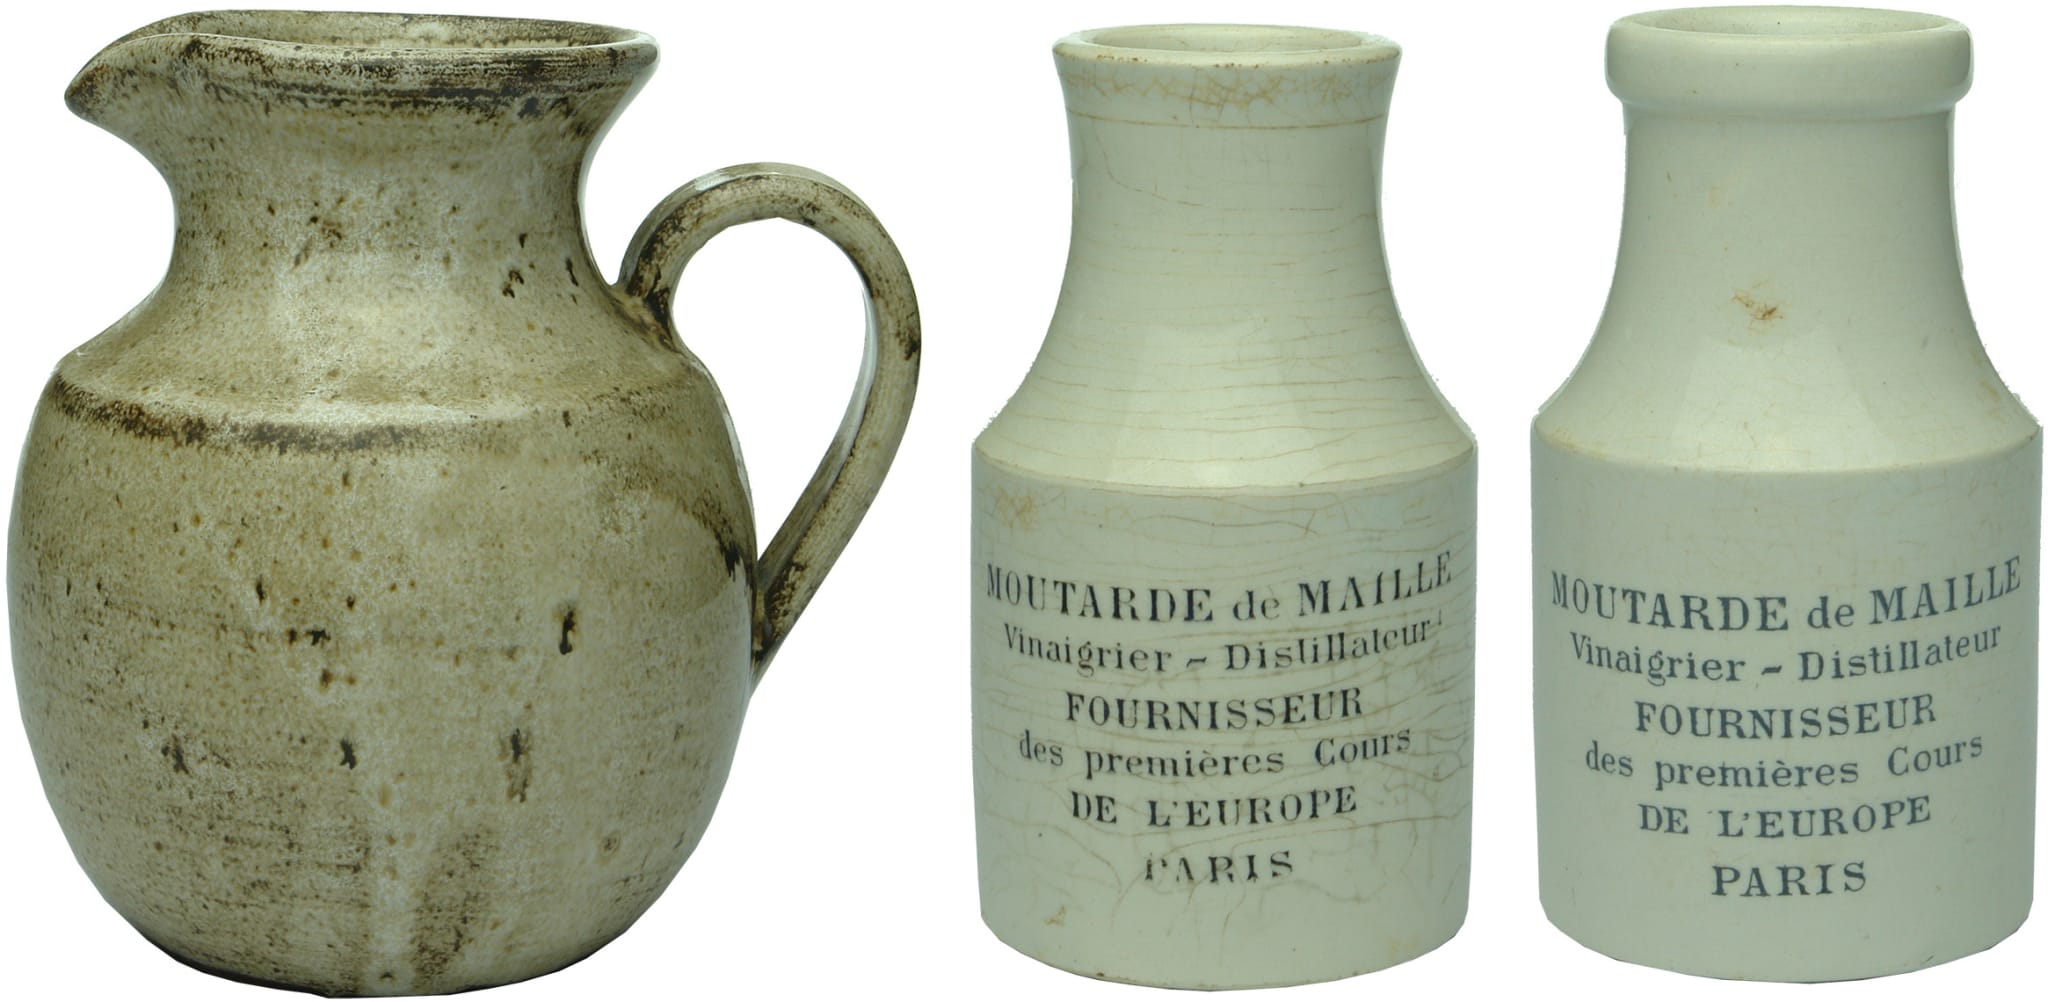 Antique Ceramic Pottery Items